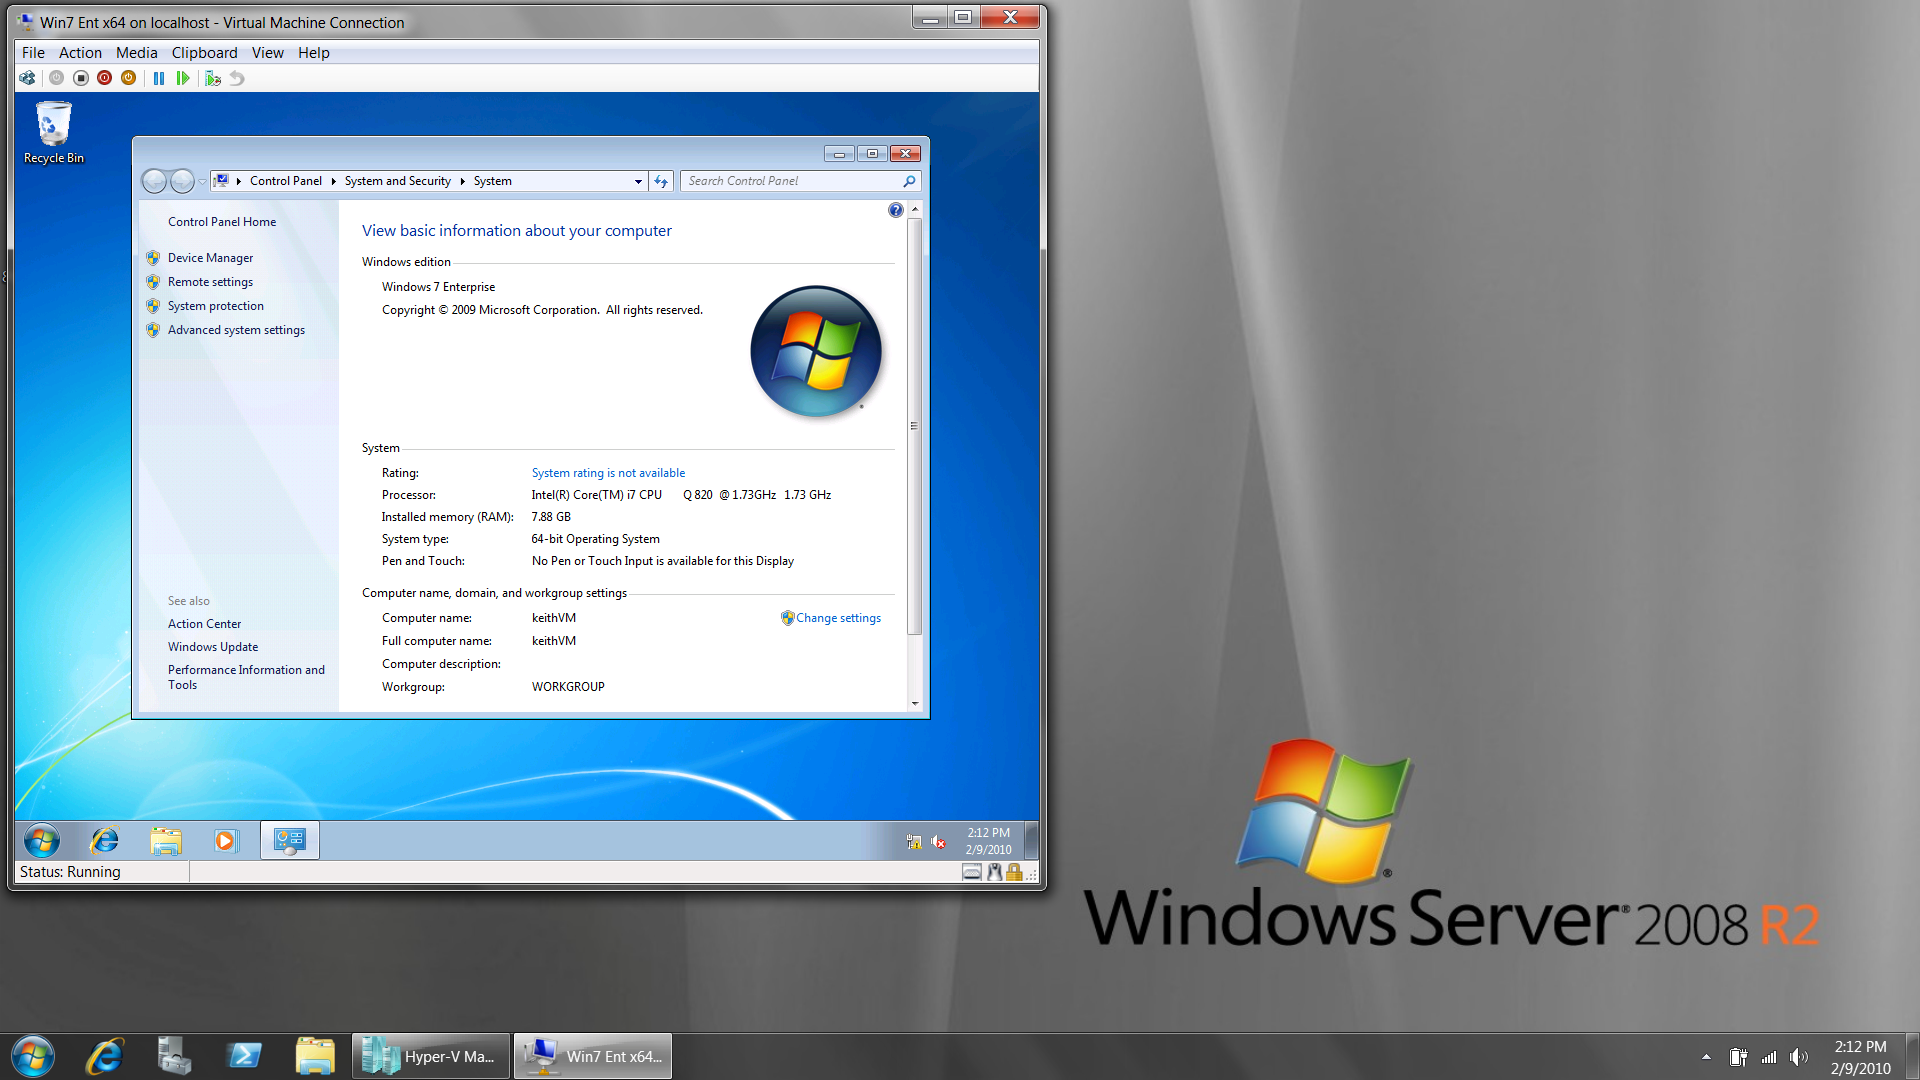 Метод предназначен  для отдельных пользователей, на компьютерах которых установлена операционная  система Windows Server 2008 R2 или Windows 7 и настроен Центр обновления Windows для загрузки и установки обновлений